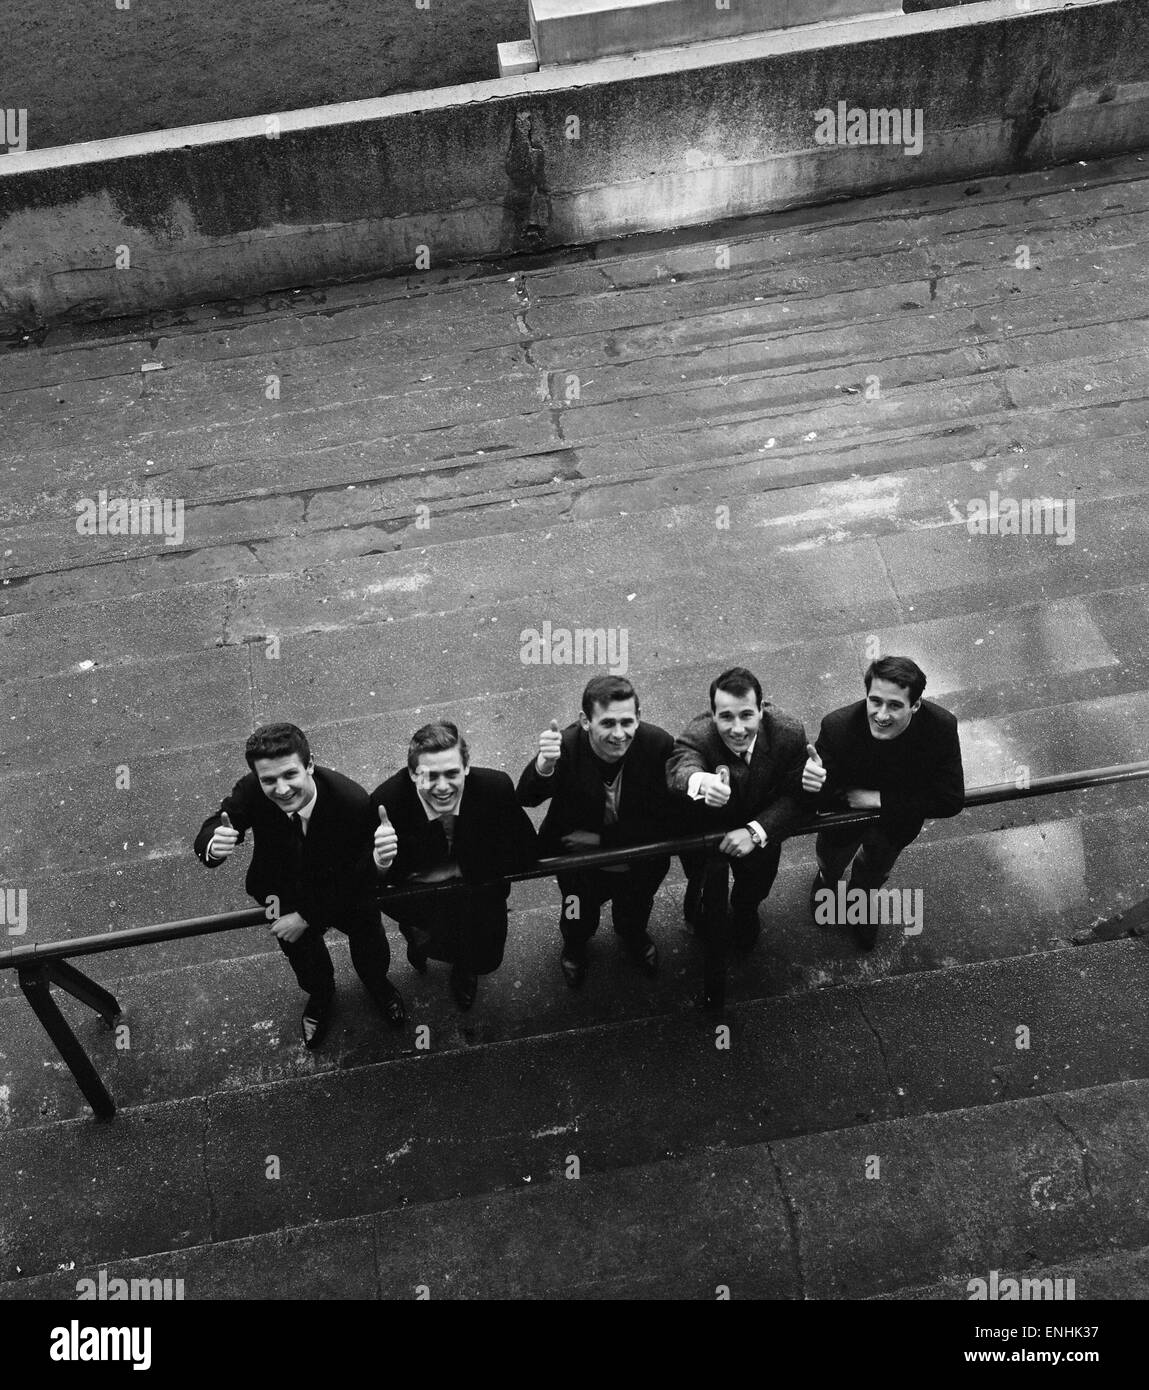 Des barricades, et un mur est érigé à Goodison Park, domicile de l'Everton Football Club, en préparation de la Coupe du Monde 1966. Les joueurs d'Everton au sol sont Brian Labone, Gordon West, Mick Meagan, Dennis Stevens et Derek Temple. 13 février 196 Banque D'Images